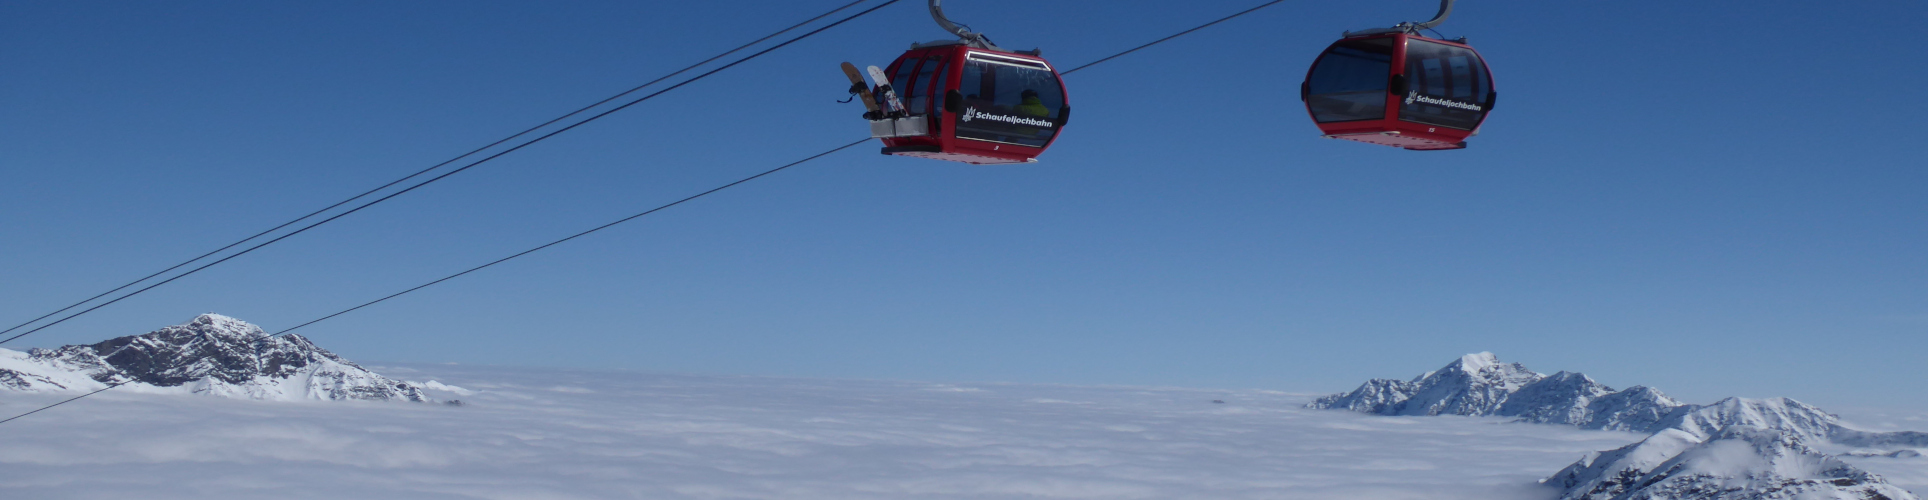 STUBAIER GLETSCHER – Gletscher- Skiwochenende – mit absoluter Schneegarantie – ab Donnerstag Nachmittag 